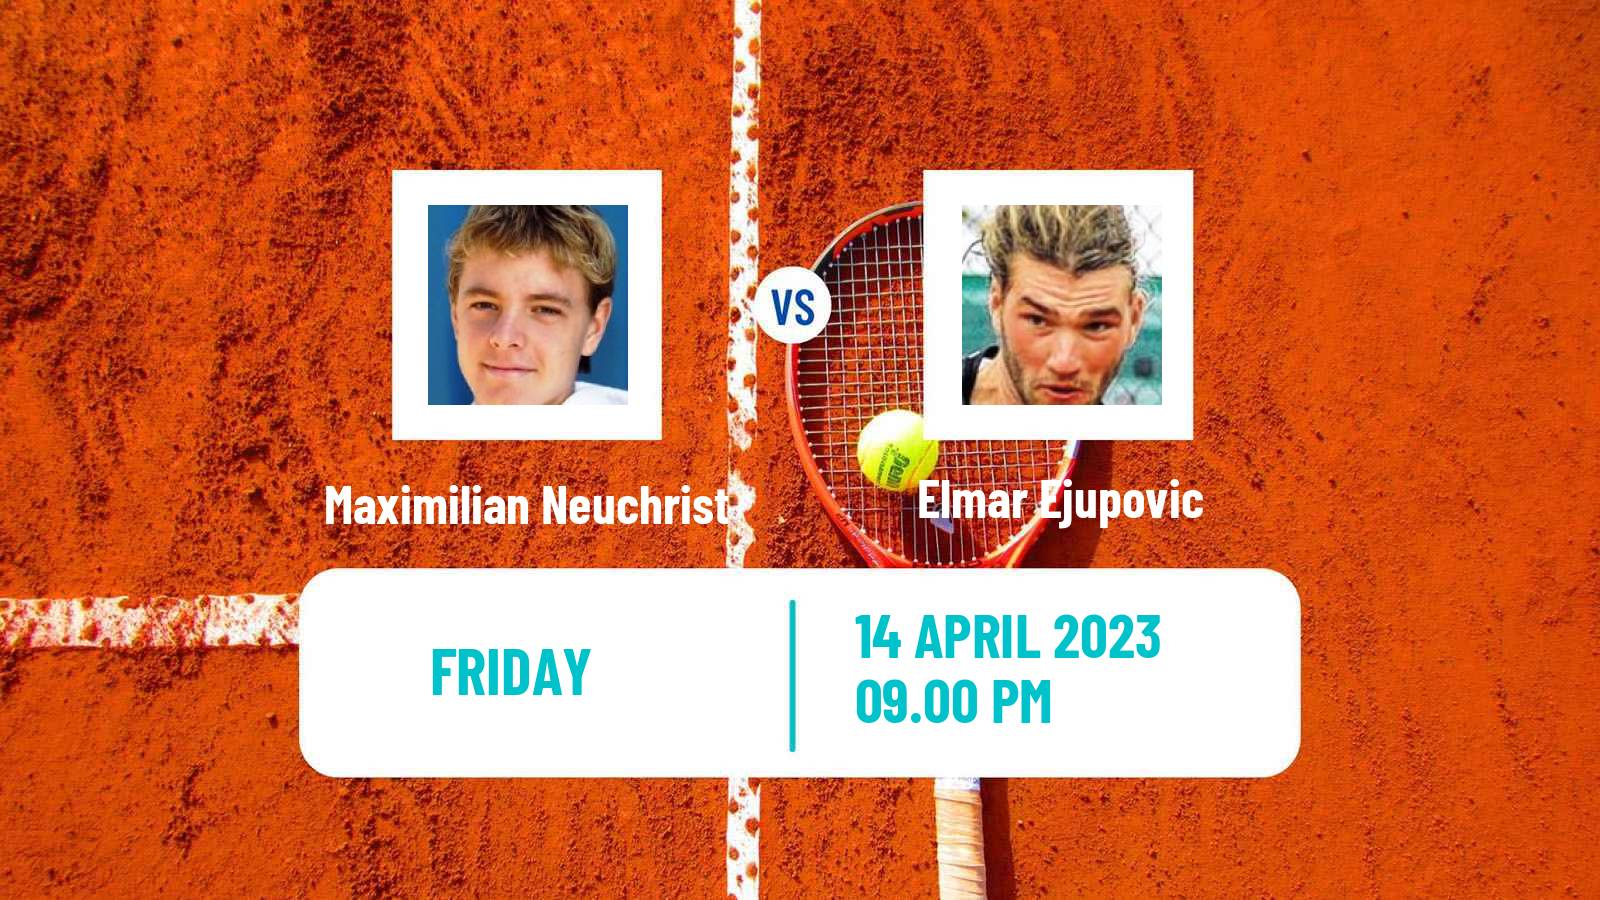 Tennis ATP Challenger Maximilian Neuchrist - Elmar Ejupovic